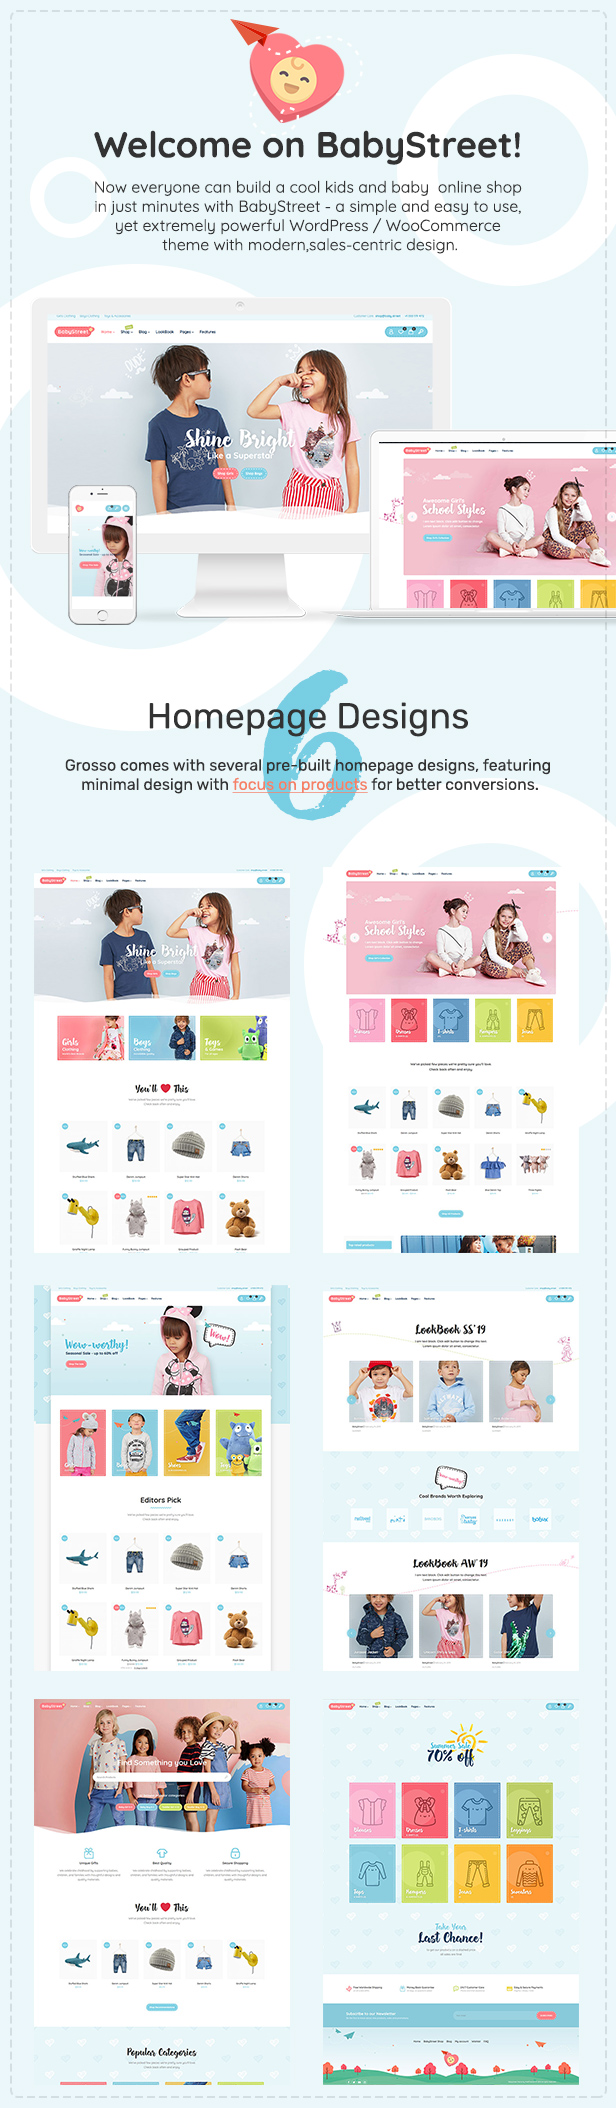 BabyStreet - WooCommerce Theme für Kindergeschäfte und Babygeschäfte Kleidung und Spielzeug - 4